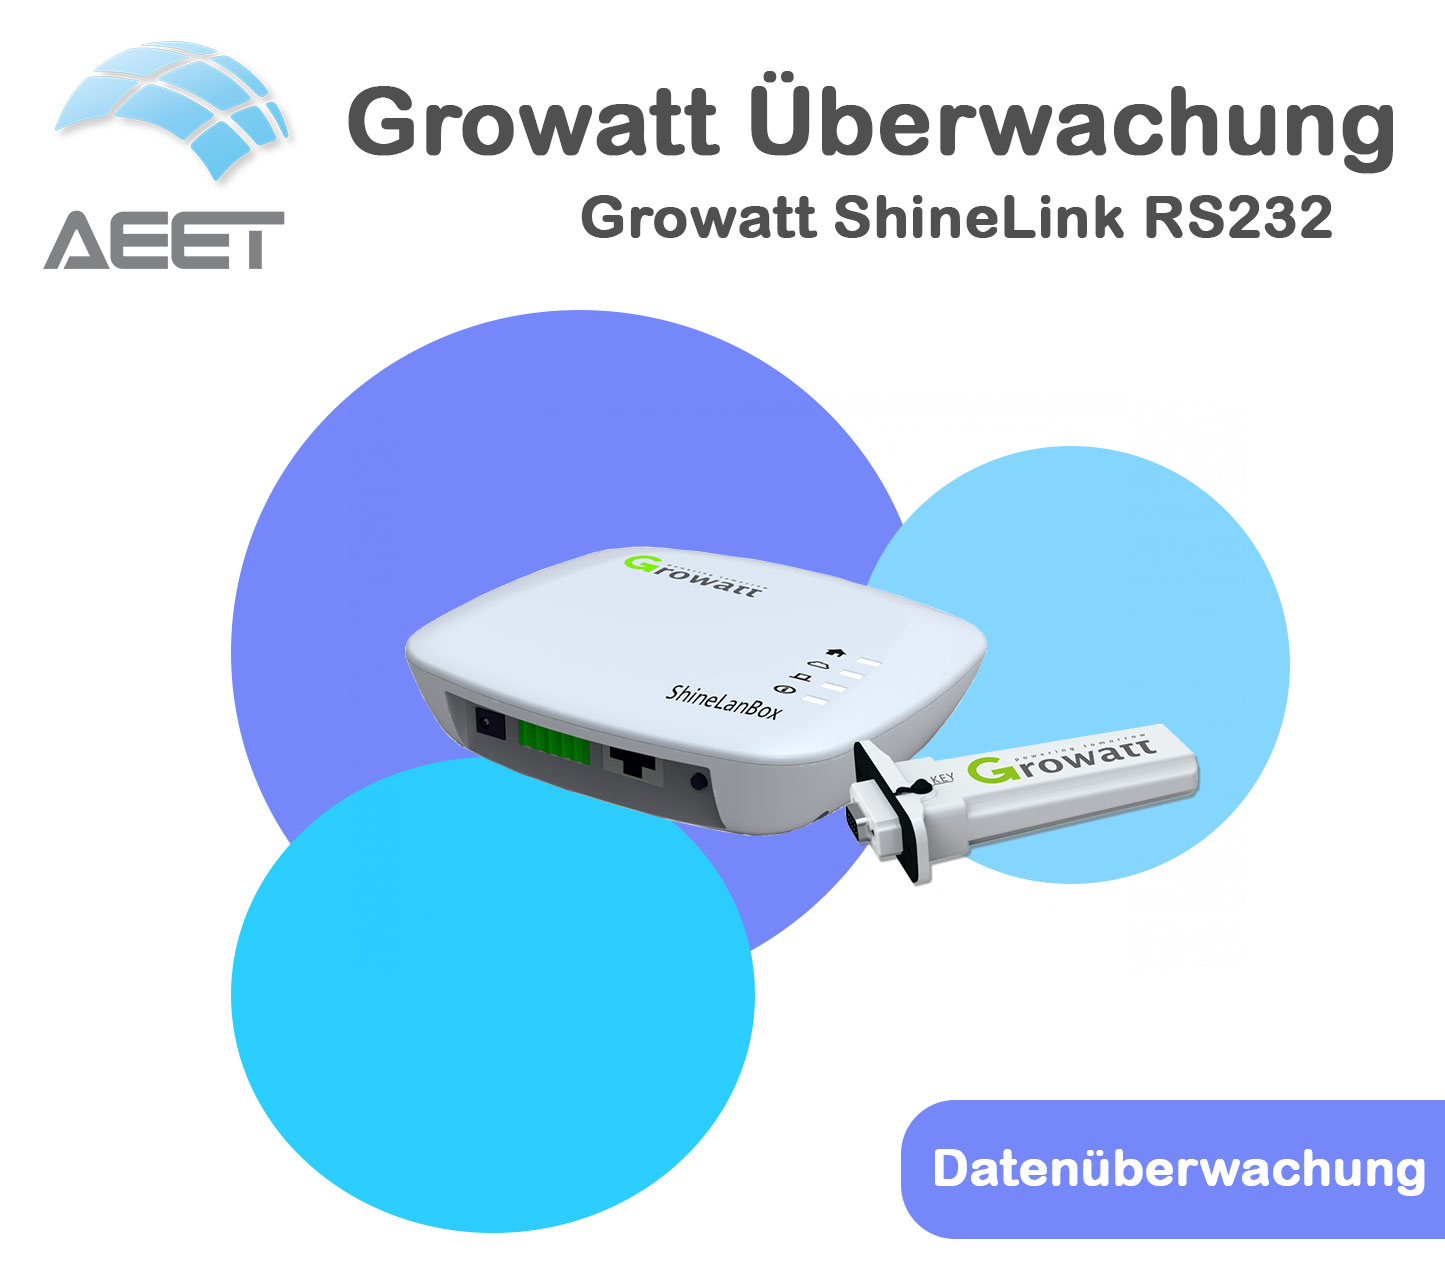 Growatt ShineLink RS232 - Datenüberwachung